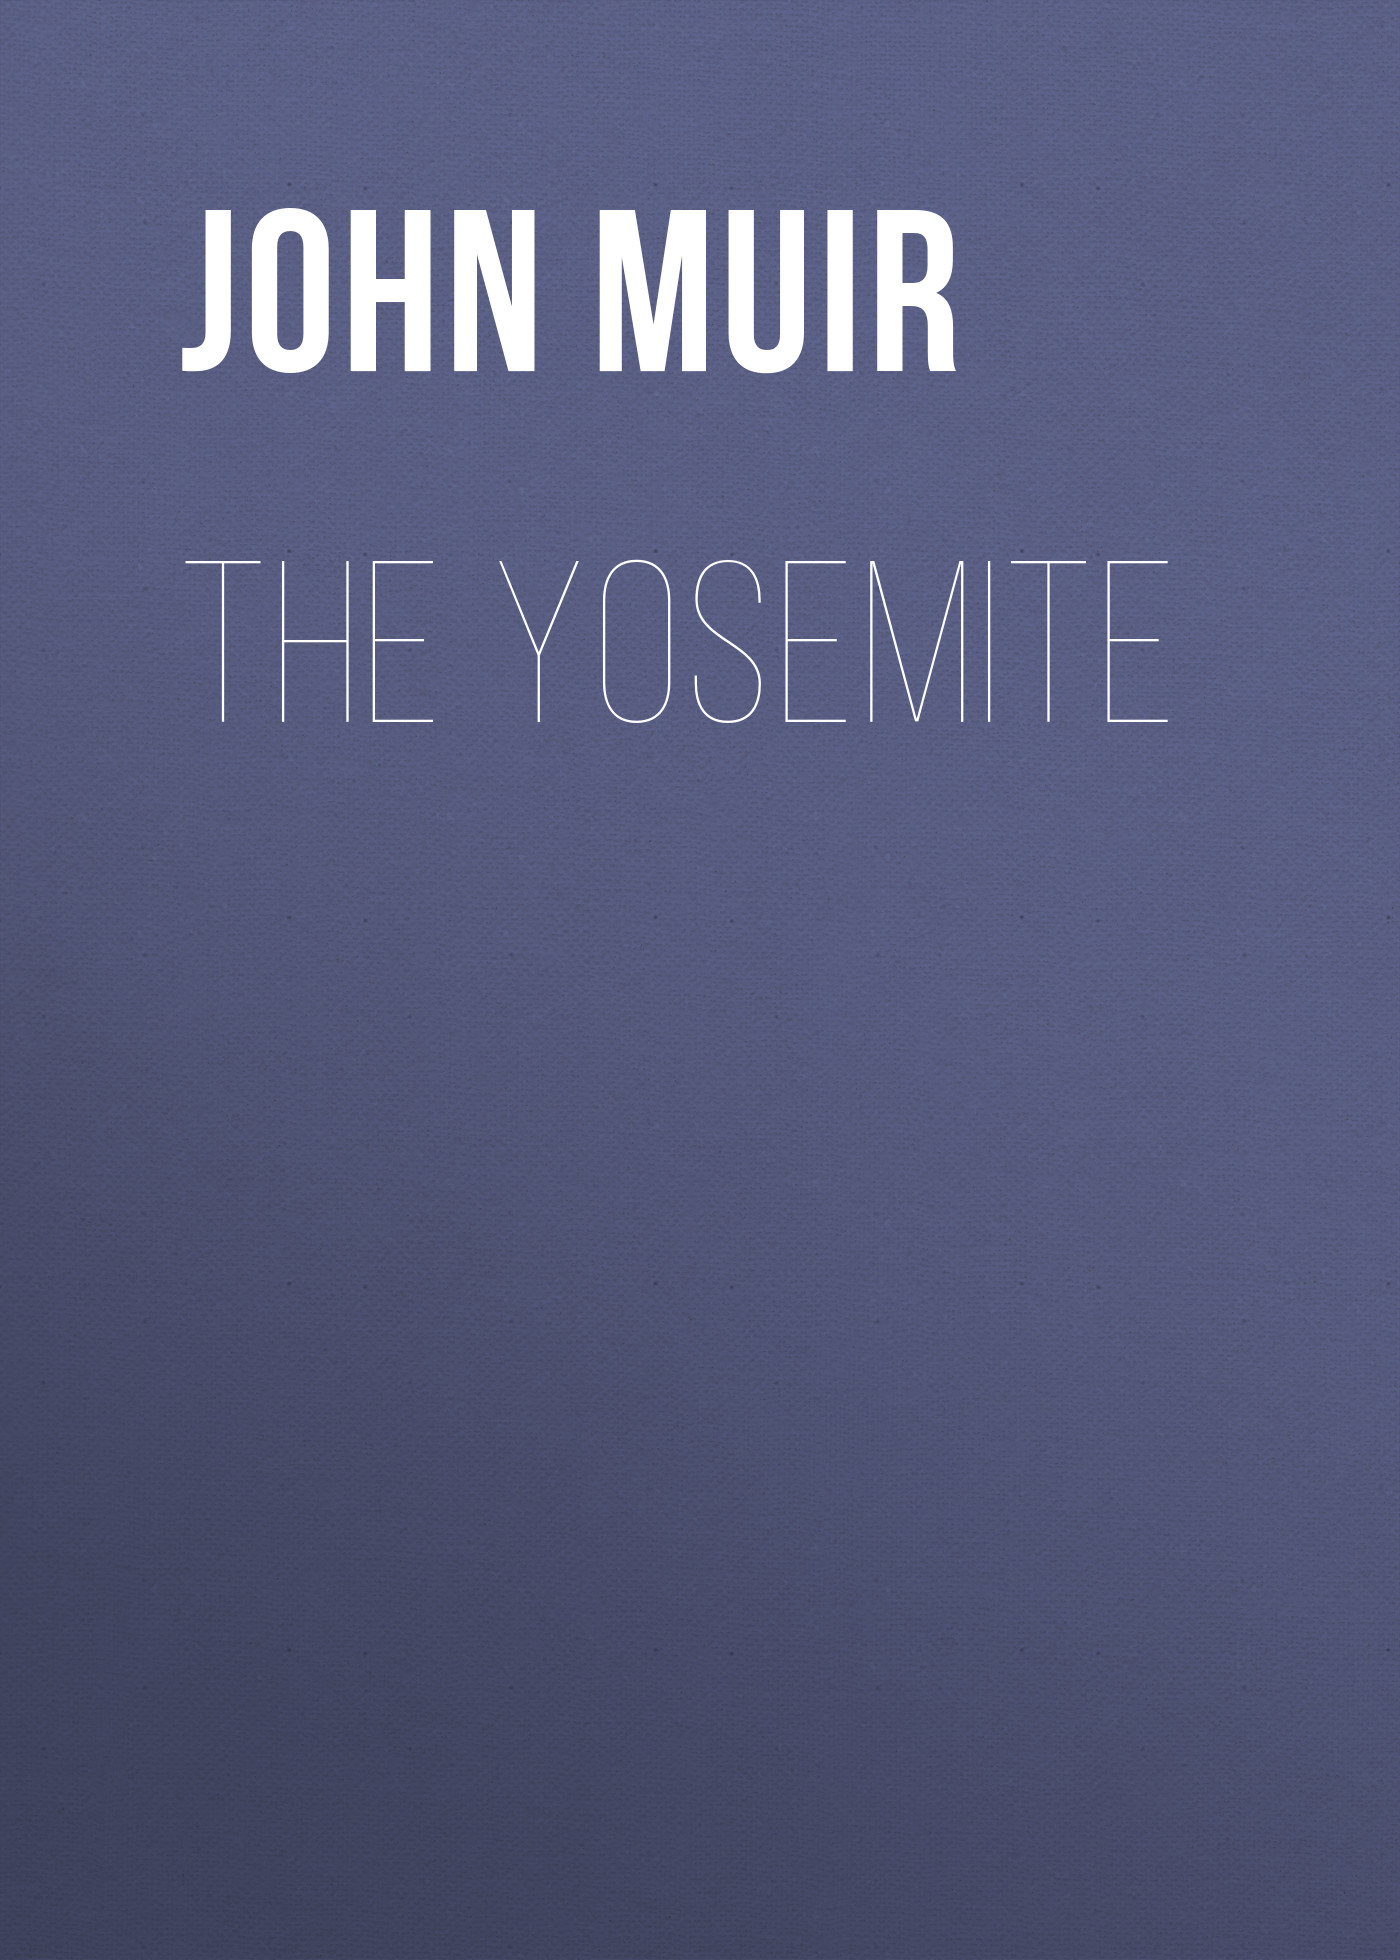 Книга The Yosemite из серии , созданная John Muir, может относится к жанру Книги о Путешествиях, История, Зарубежная образовательная литература, Зарубежная старинная литература, Зарубежная классика. Стоимость электронной книги The Yosemite с идентификатором 36095405 составляет 0 руб.